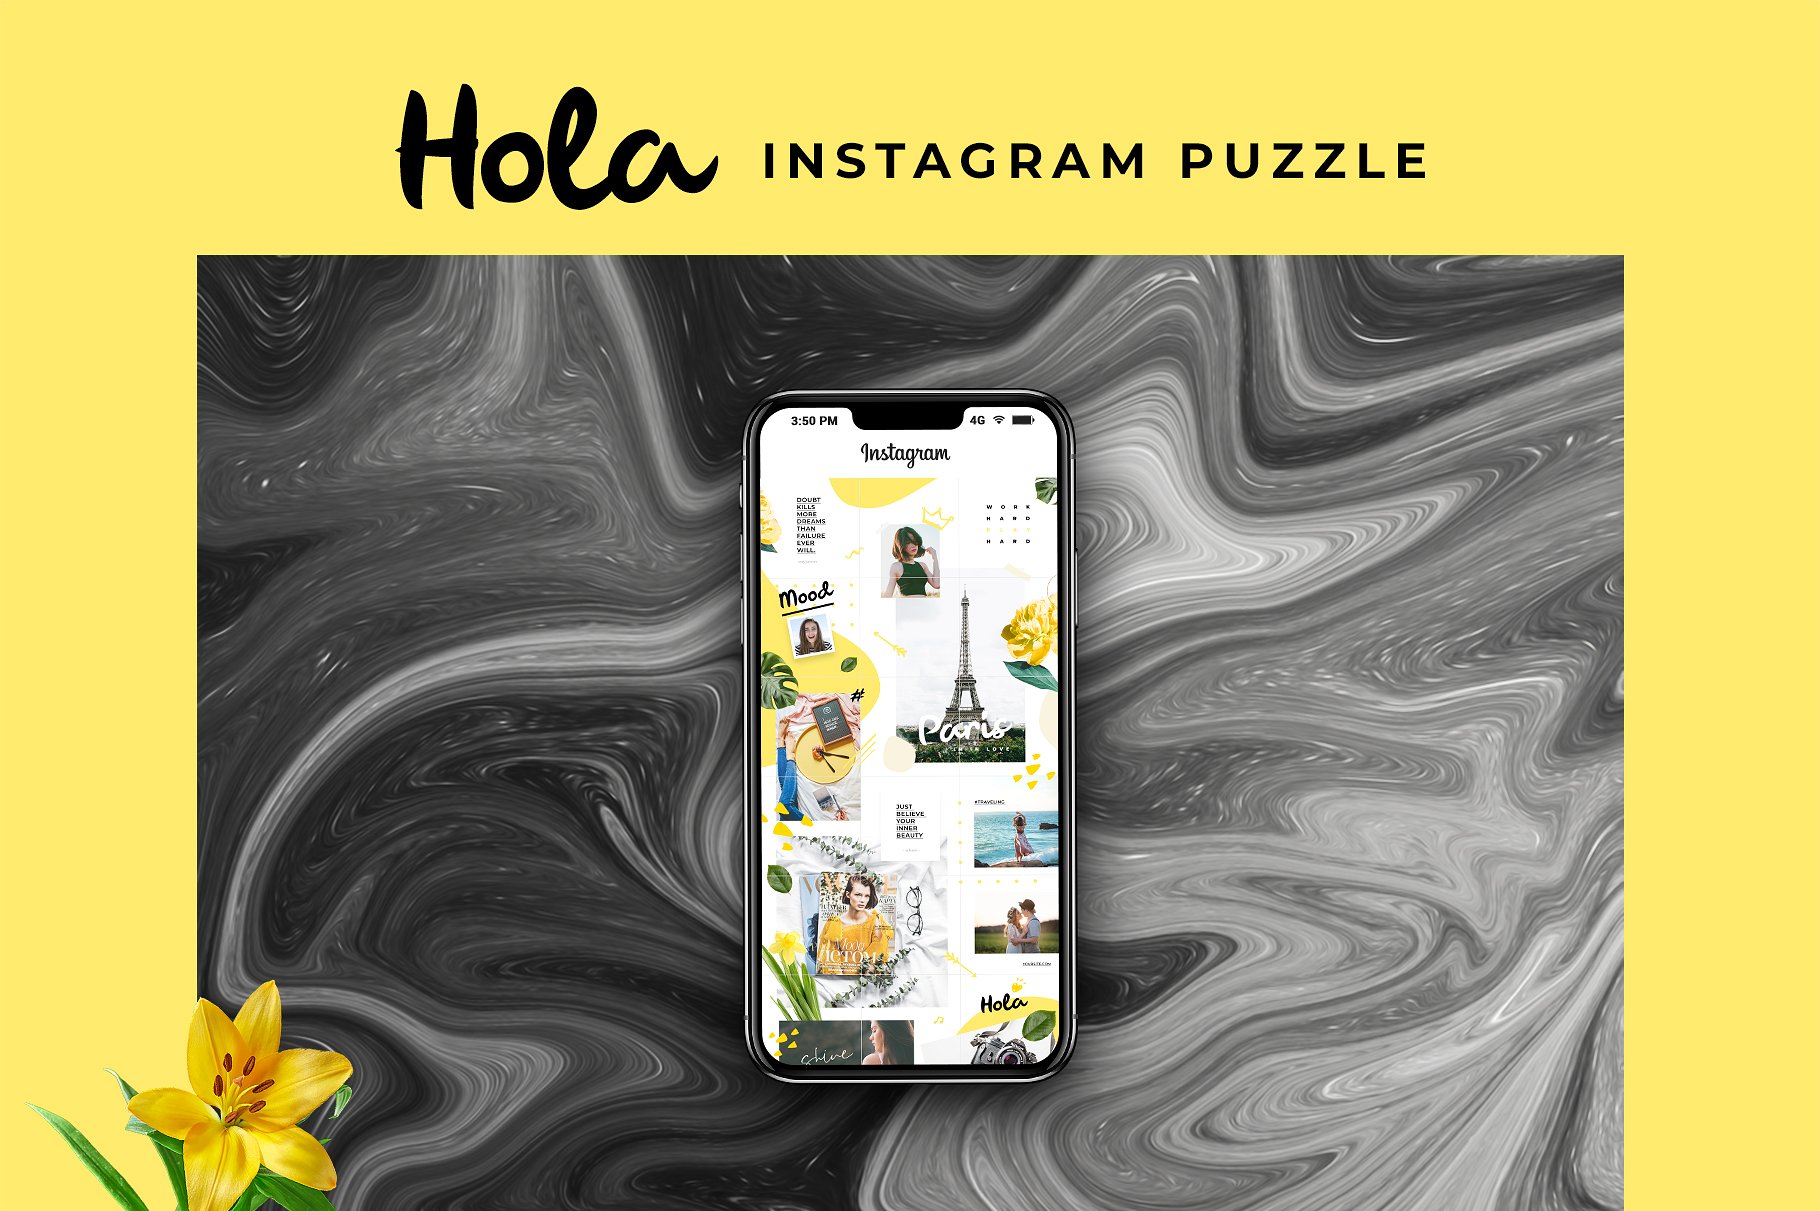 时尚极简的Instagram社交媒体模板大洋岛精选 Instagram Puzzle – Hola [psd]插图2